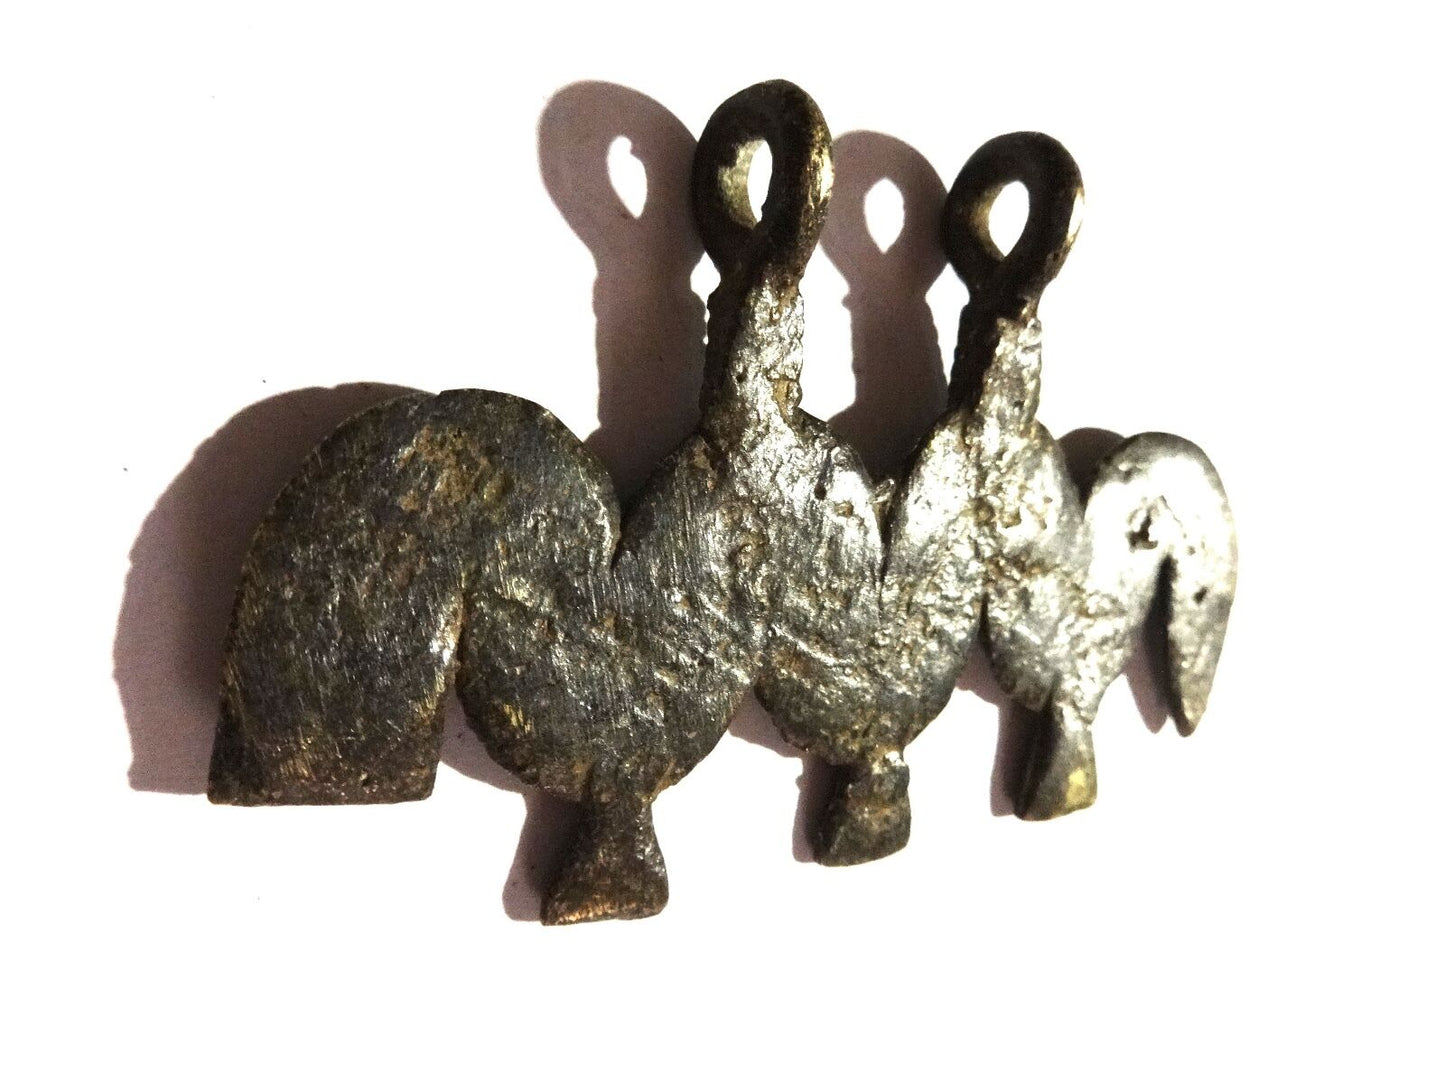 #Y1 Rare Gan Burkina faso bronze pendant w/ a Caterpillar for Good Luck 3" long